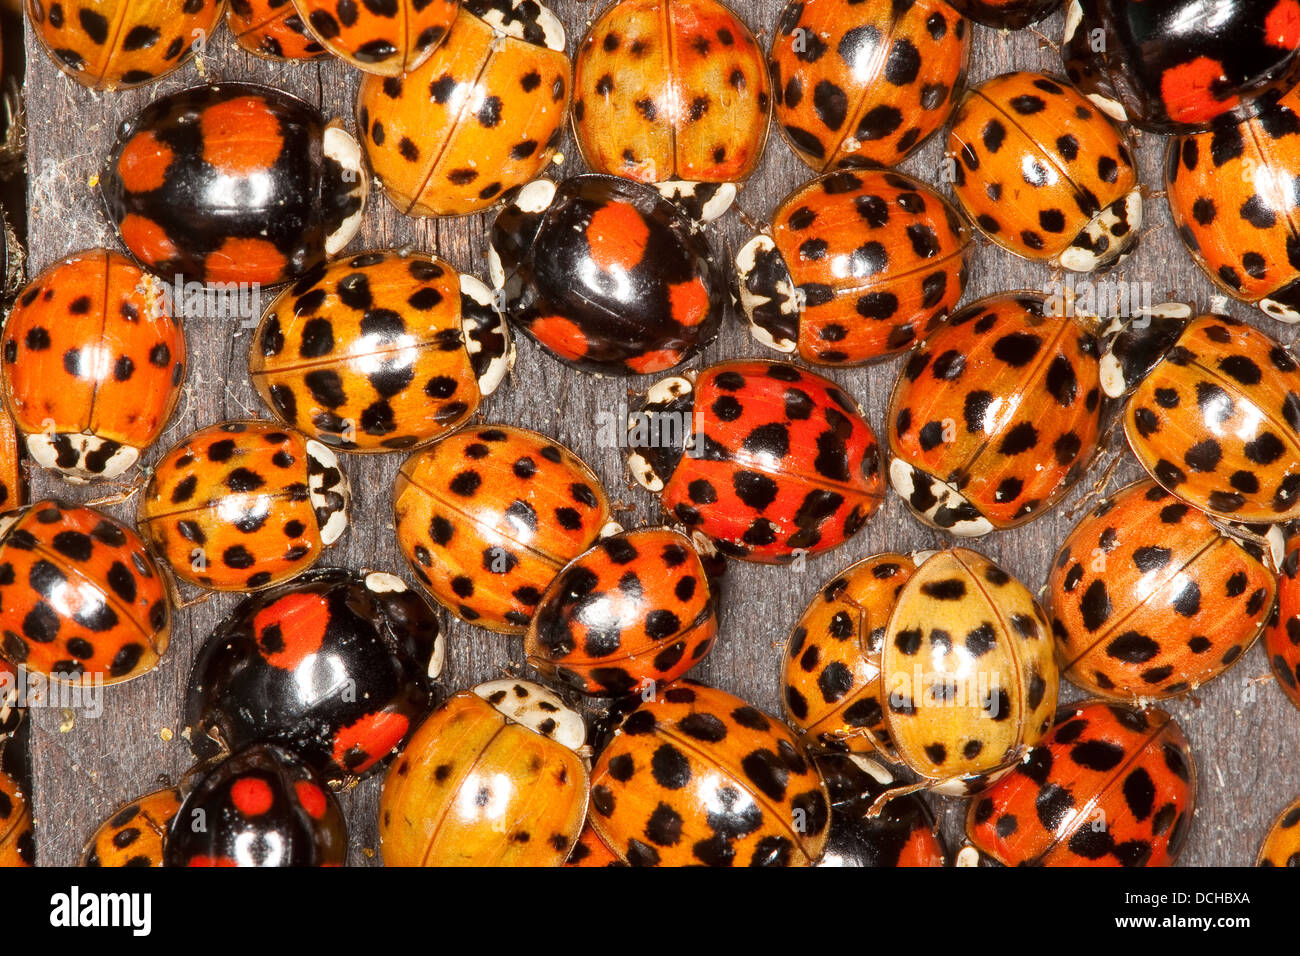 Asian lady beetle, Harlequin lady beetle, ladybird, ladybirds, Asiatischer Marienkäfer, Harlekin, Marienkäfer, Harmonia axyridis Stock Photo